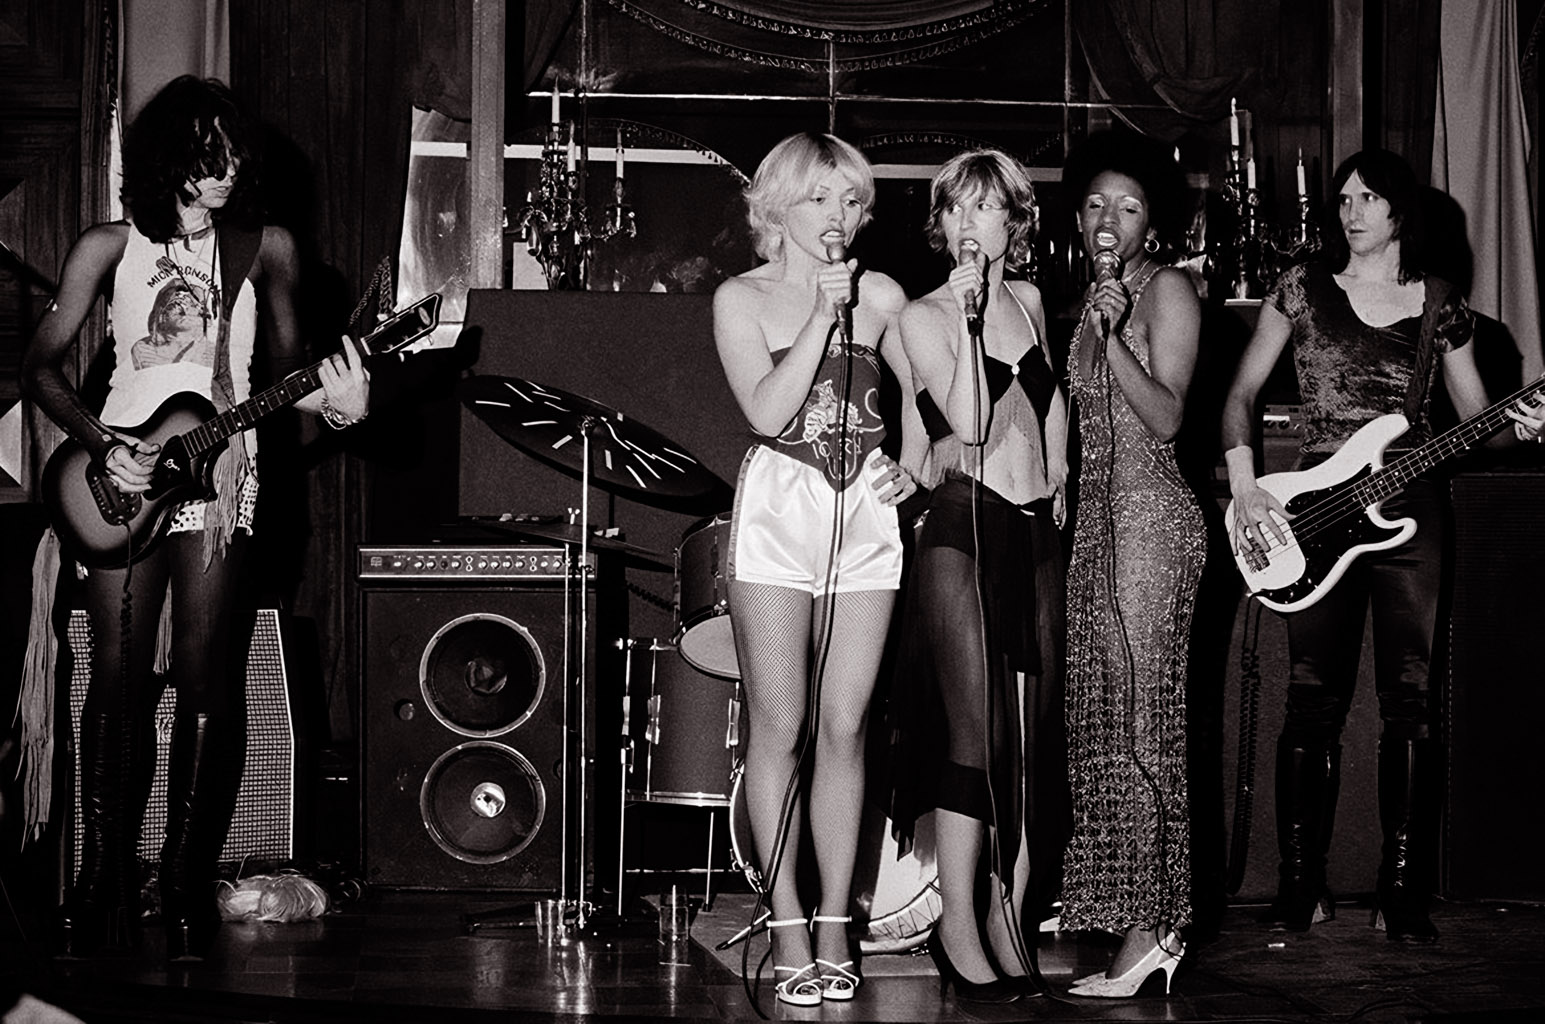 Club 82 on July 3 1974.